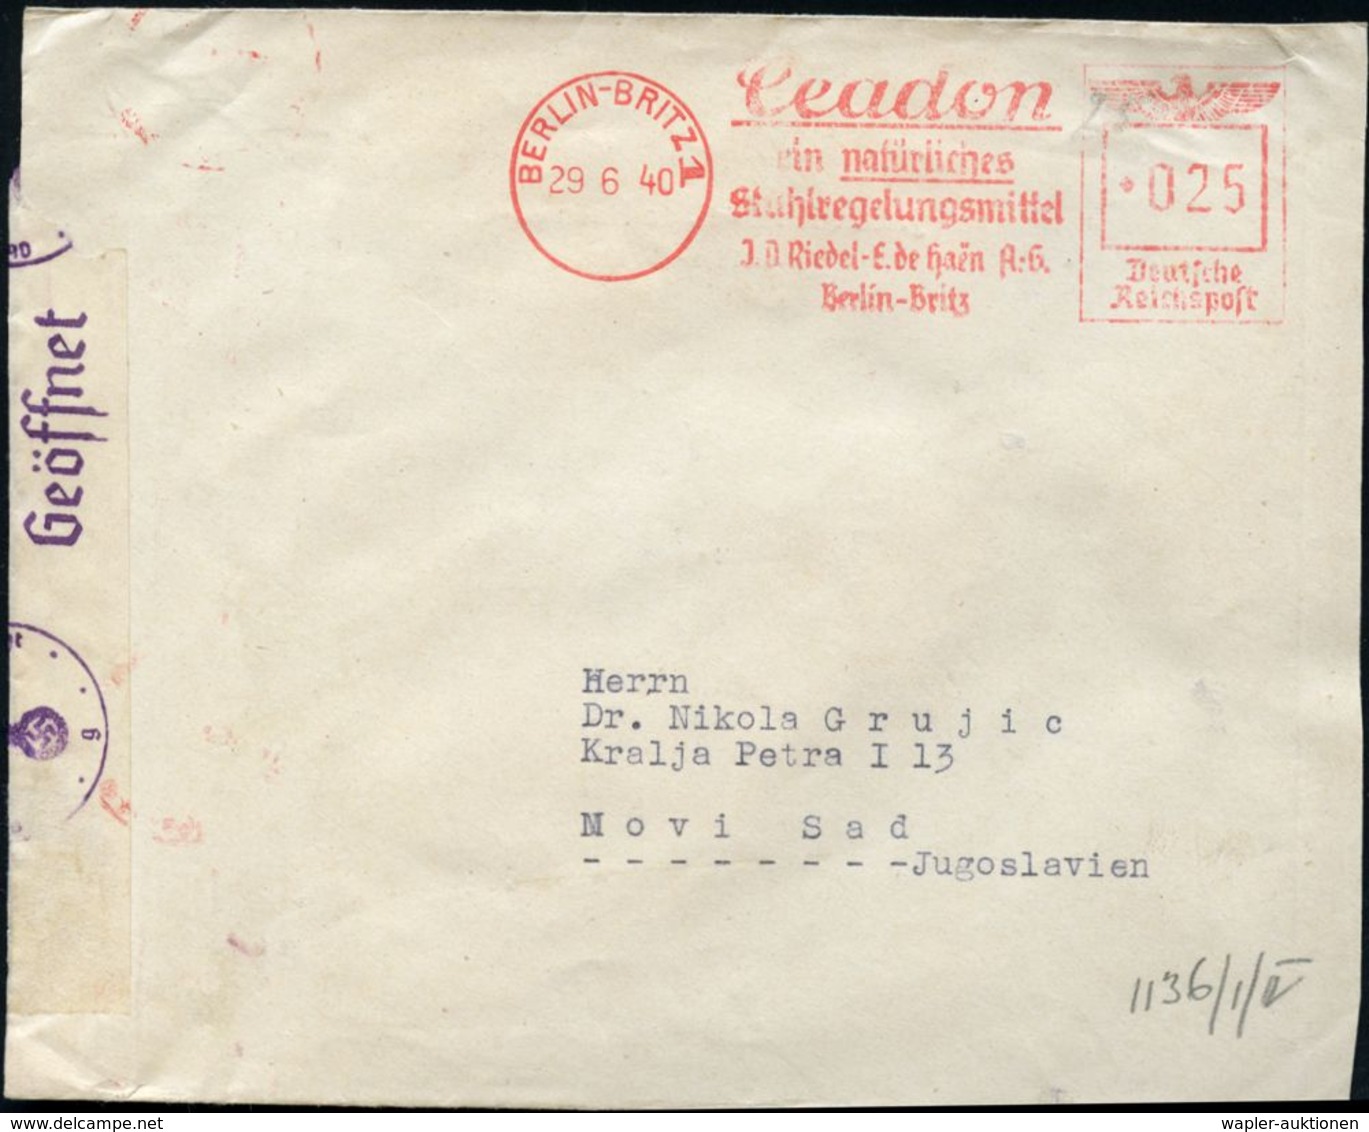 BERLIN-BRITZ 1/ Ceadon/ Ein Natürliches/ Stuhlregelungsmittel/ J.D.Riedel-E De Haen A.G. 1940 (29.6.) AFS 025 Pf. + OKW- - Chemie